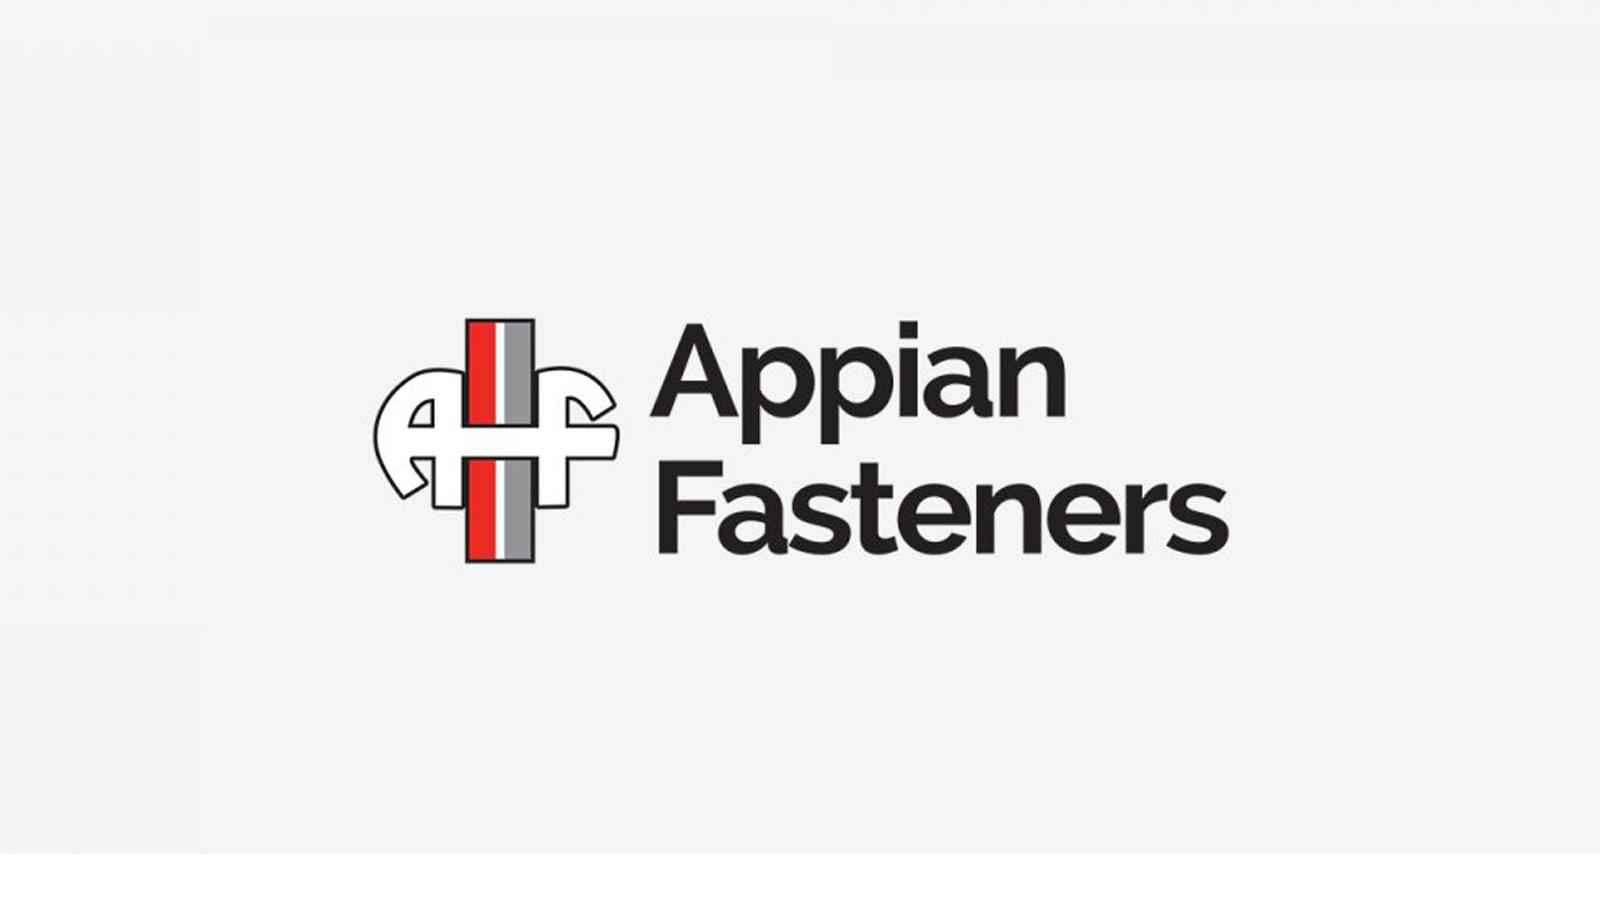 Appian Fasteners